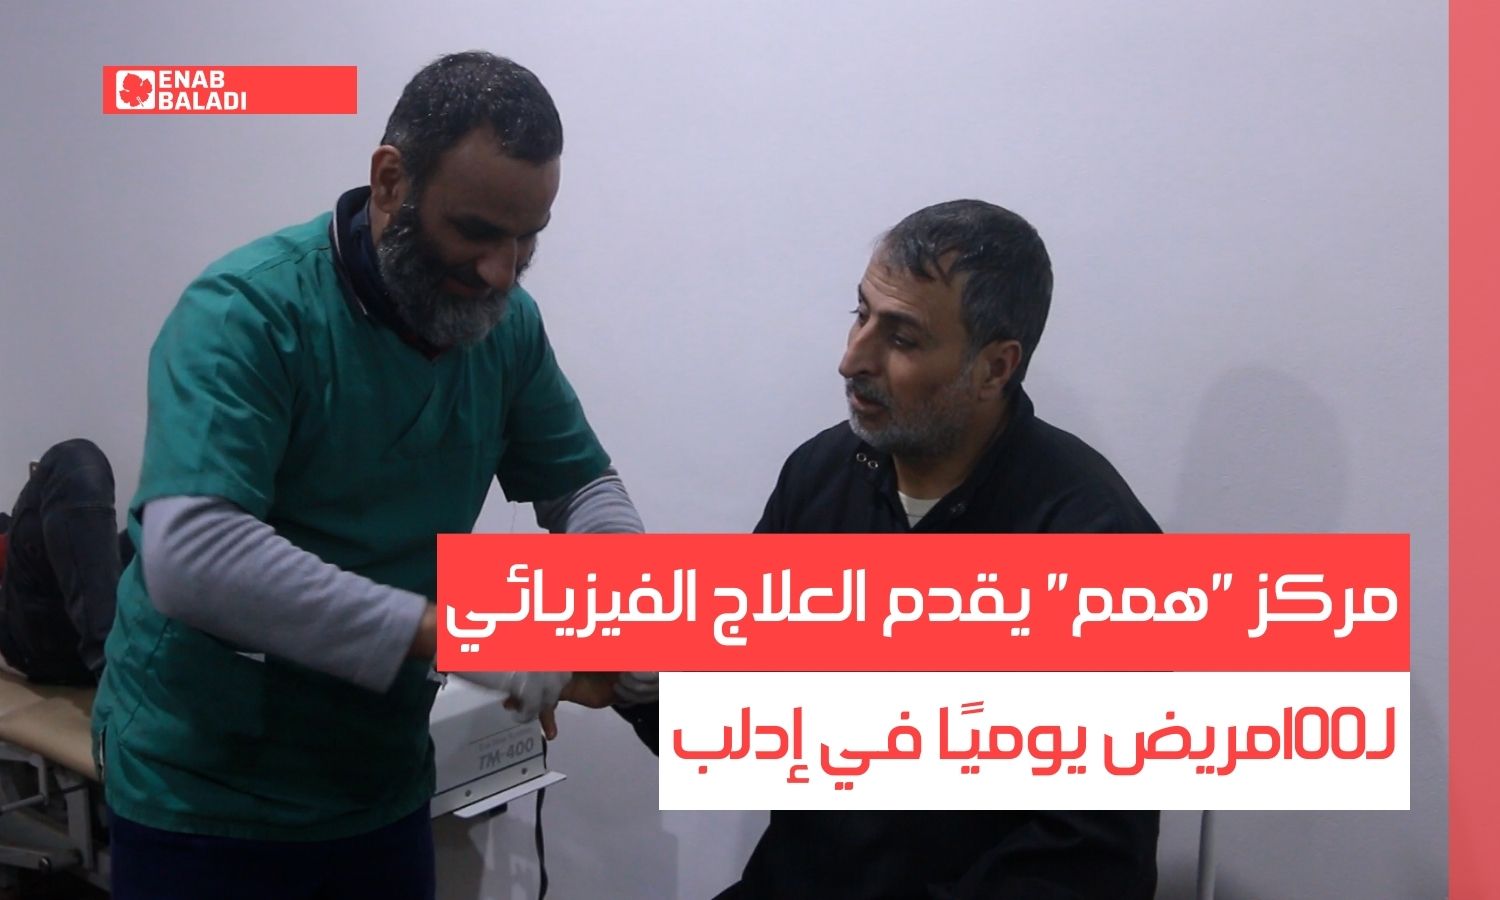 مركز "همم" يقدم العلاج الفيزيائي لـ100 مريض يوميًا في إدلب